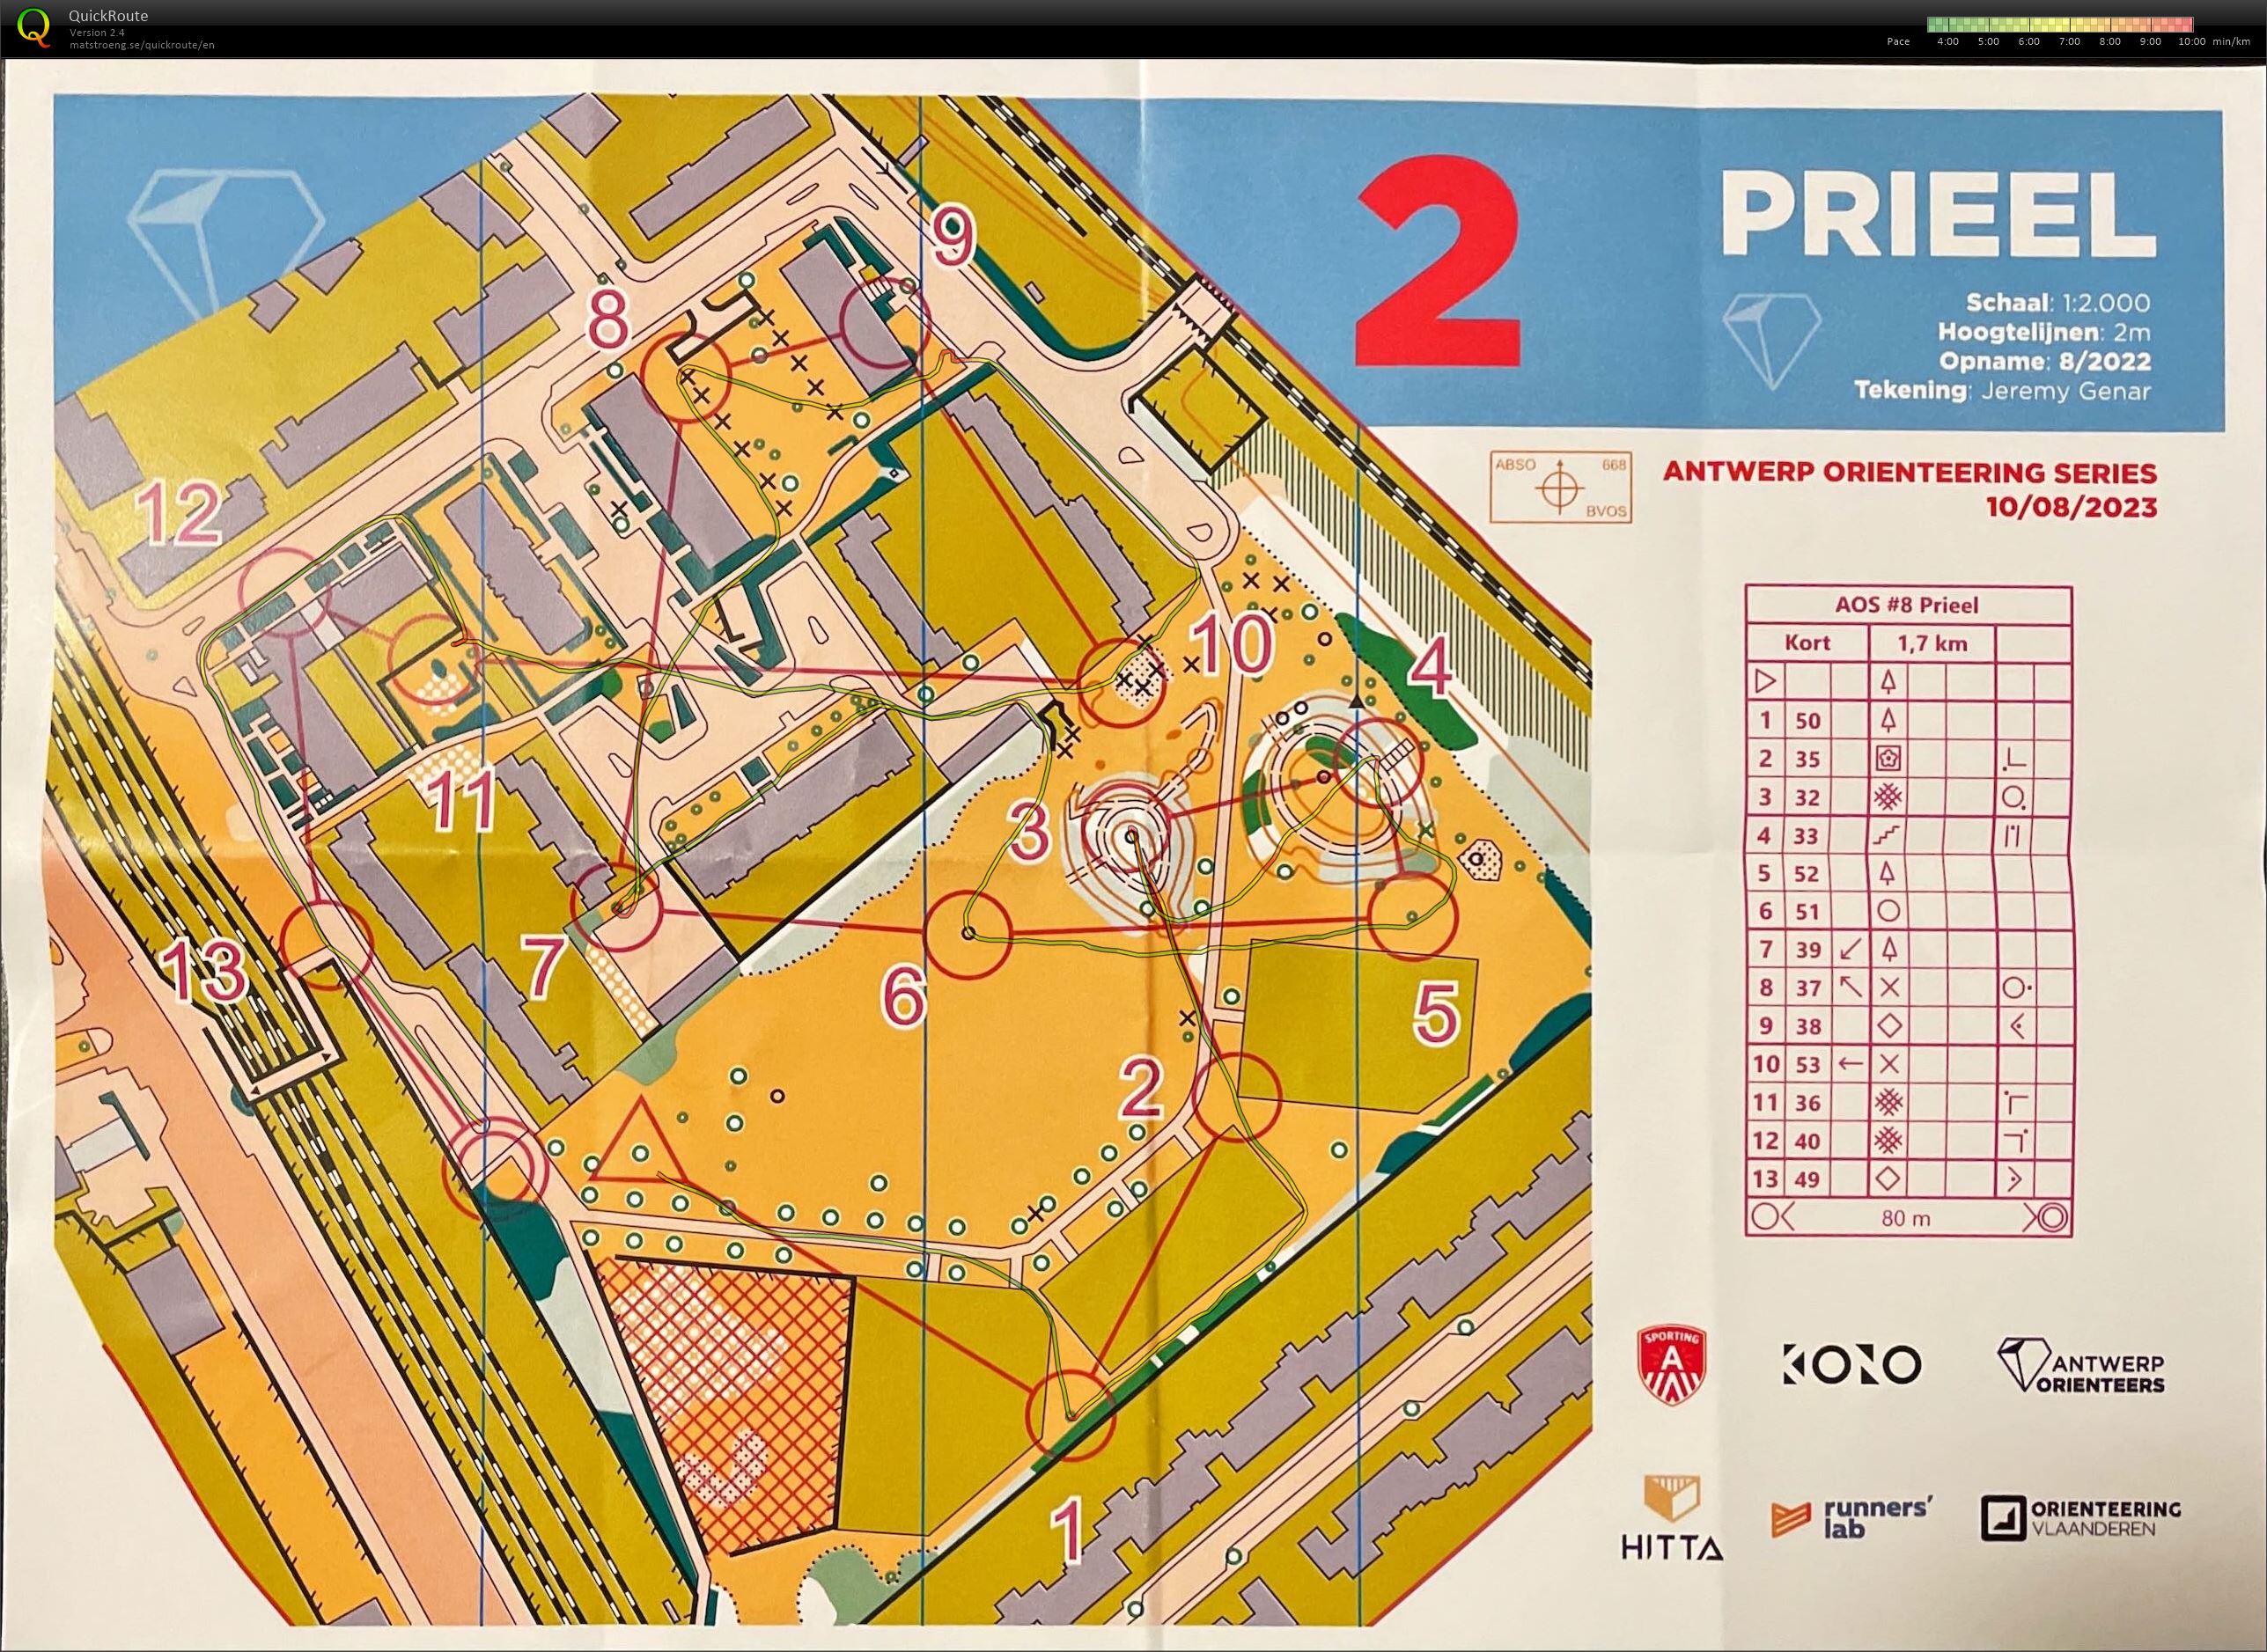 Antwerp Orienteering Series - Prieel - Kort (10-08-2023)